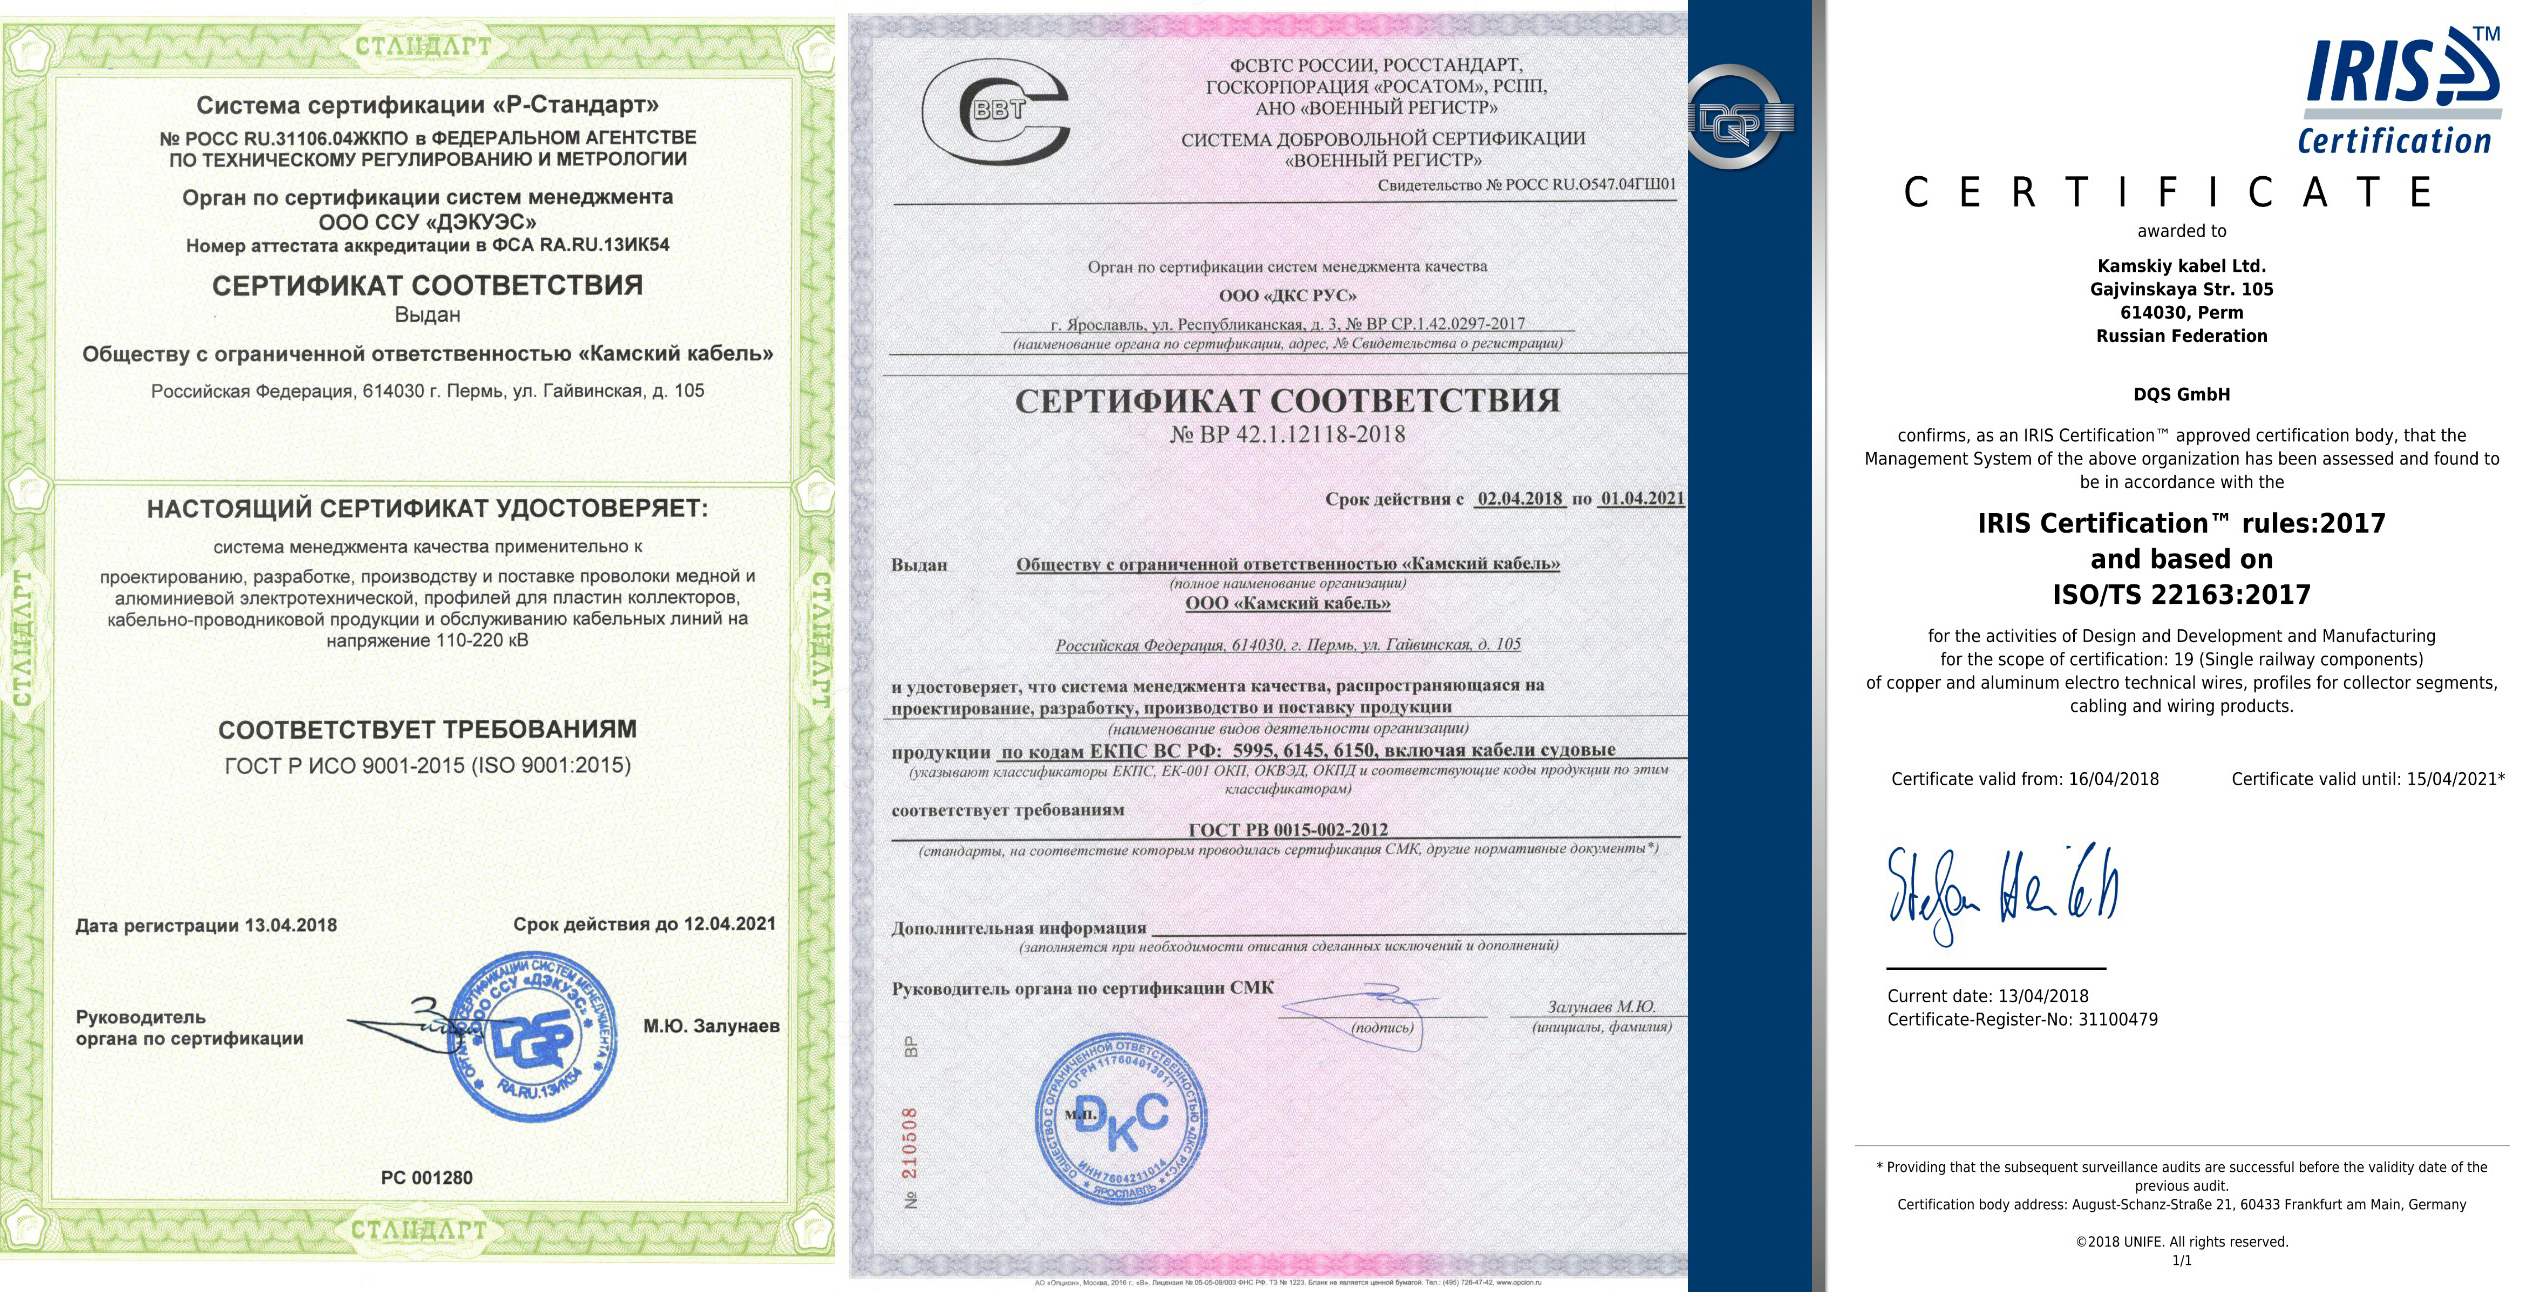 Ярославль сертификат гост рв 0015-002-2012 / как получить